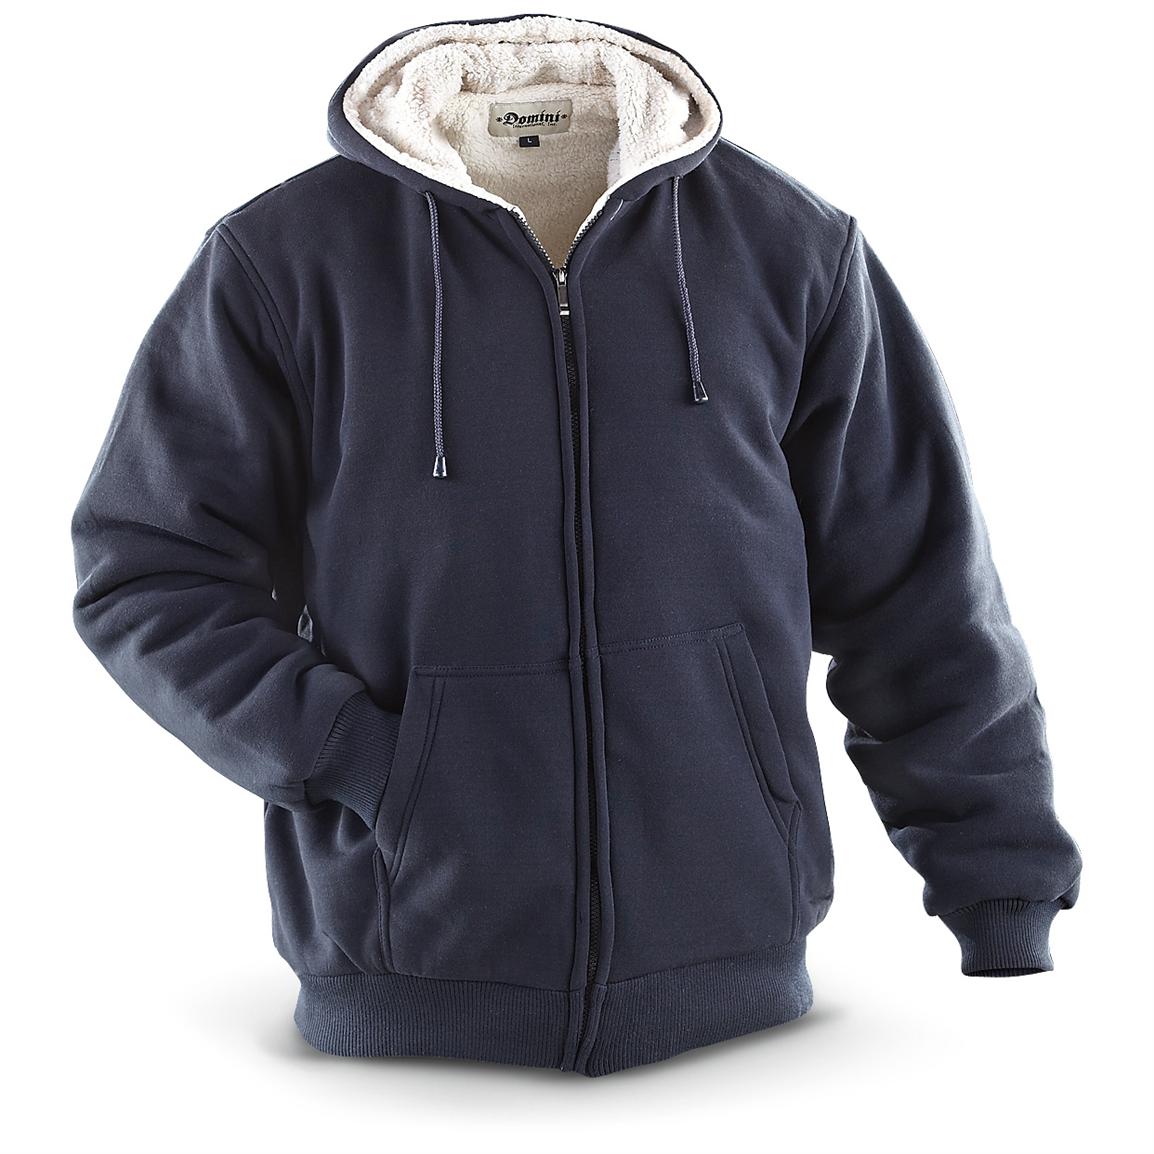 Domini Fleece - lined Hooded Jacket - 233428, Sweatshirts ...